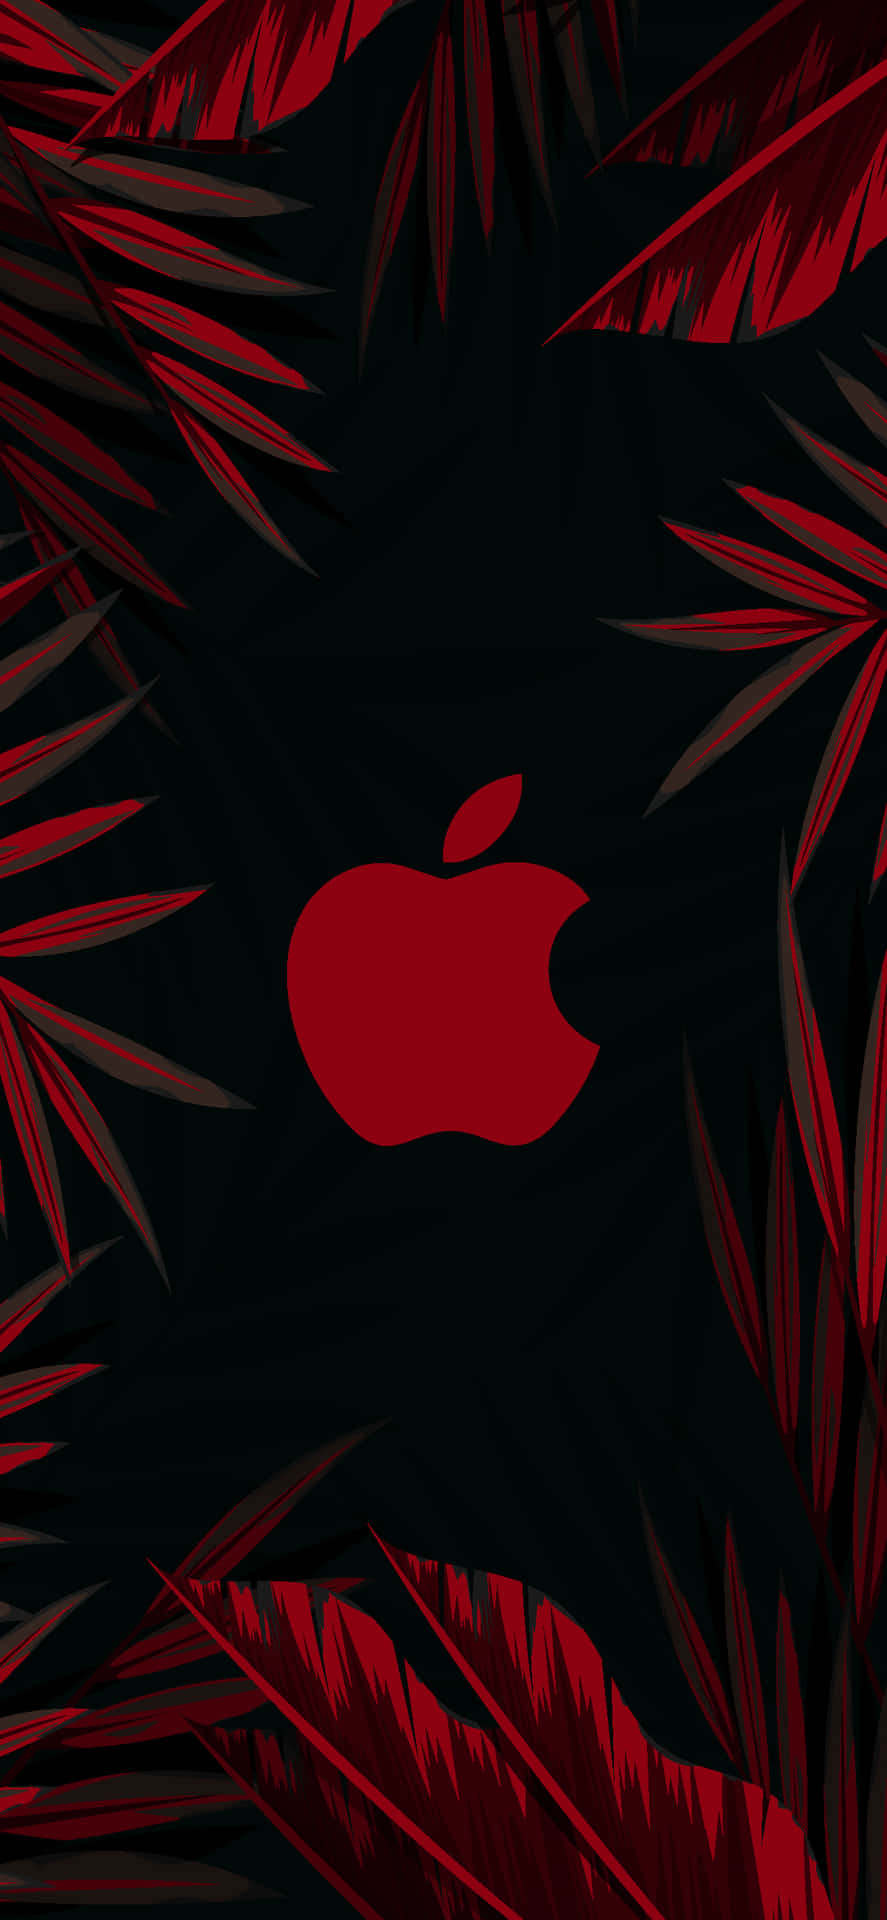 Fundode Tela Do Iphone Hd Incrível Da Apple Com Logotipo Vermelho E Folha. Papel de Parede